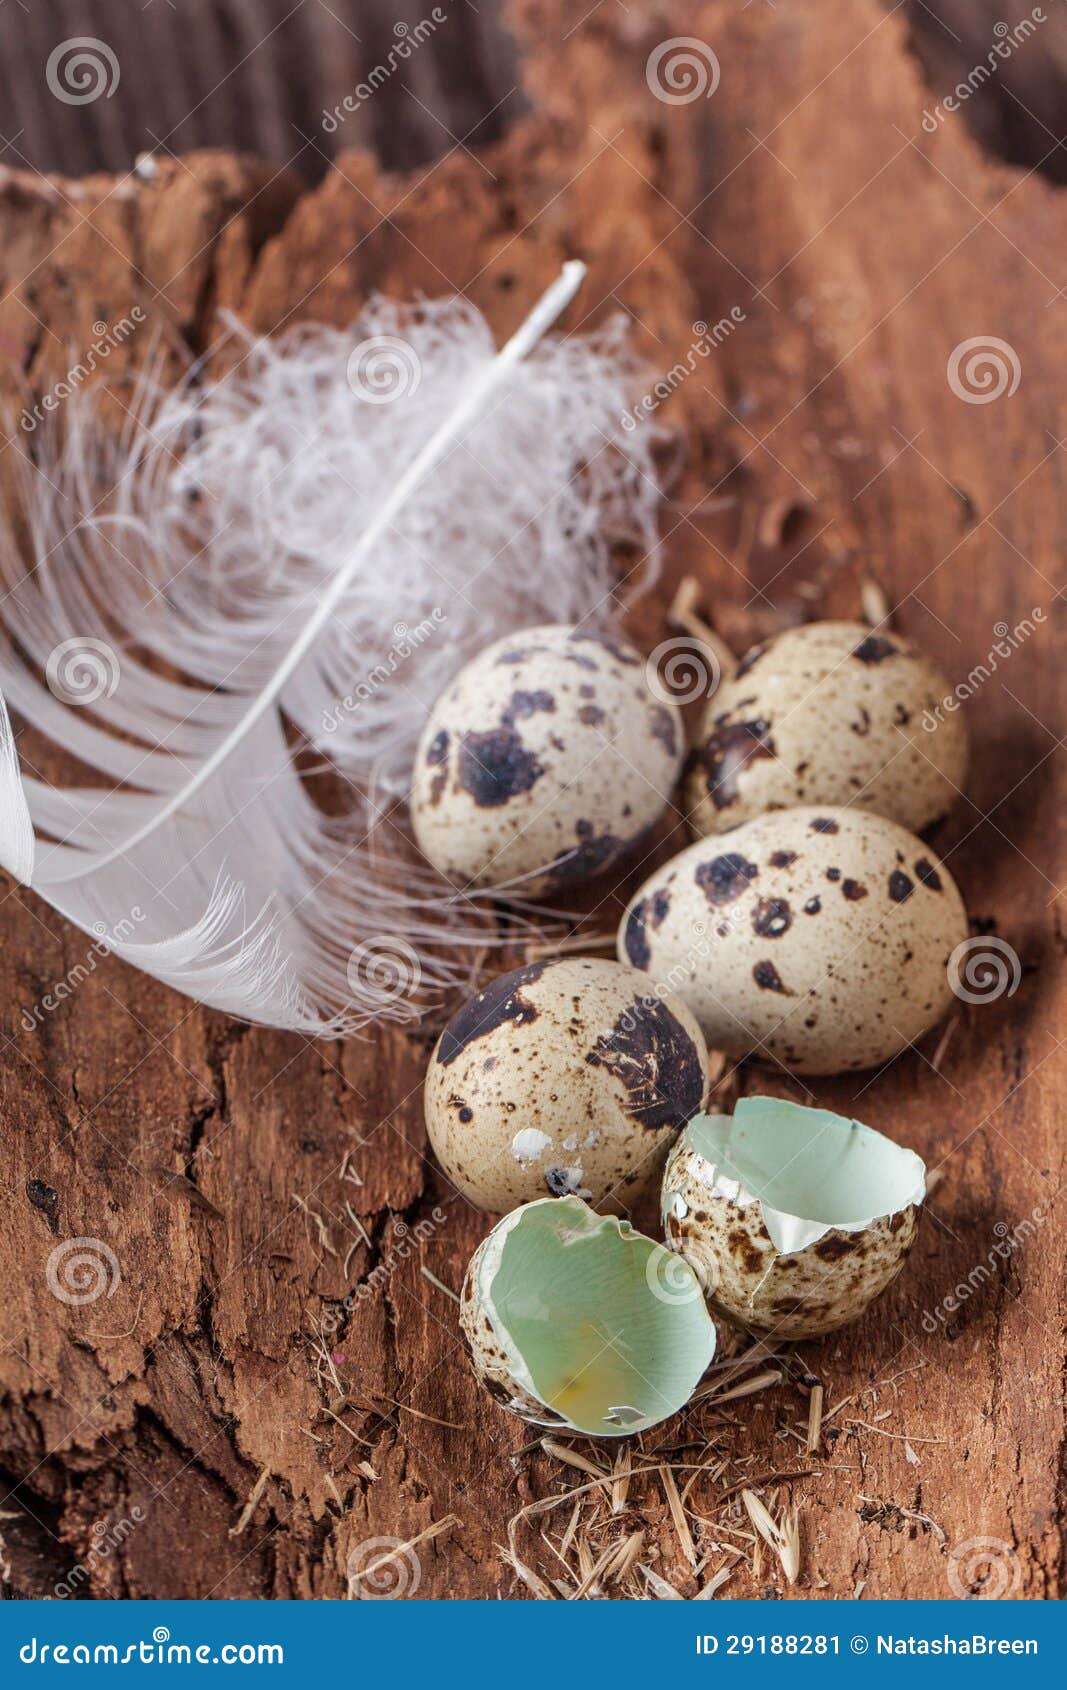 Как разбивать перепелиные яйца. Разбить перепелиные яйца. Разбитые перепелиные яйца. Желток перепелиного яйца. Перепелиное яйцо разбитое.